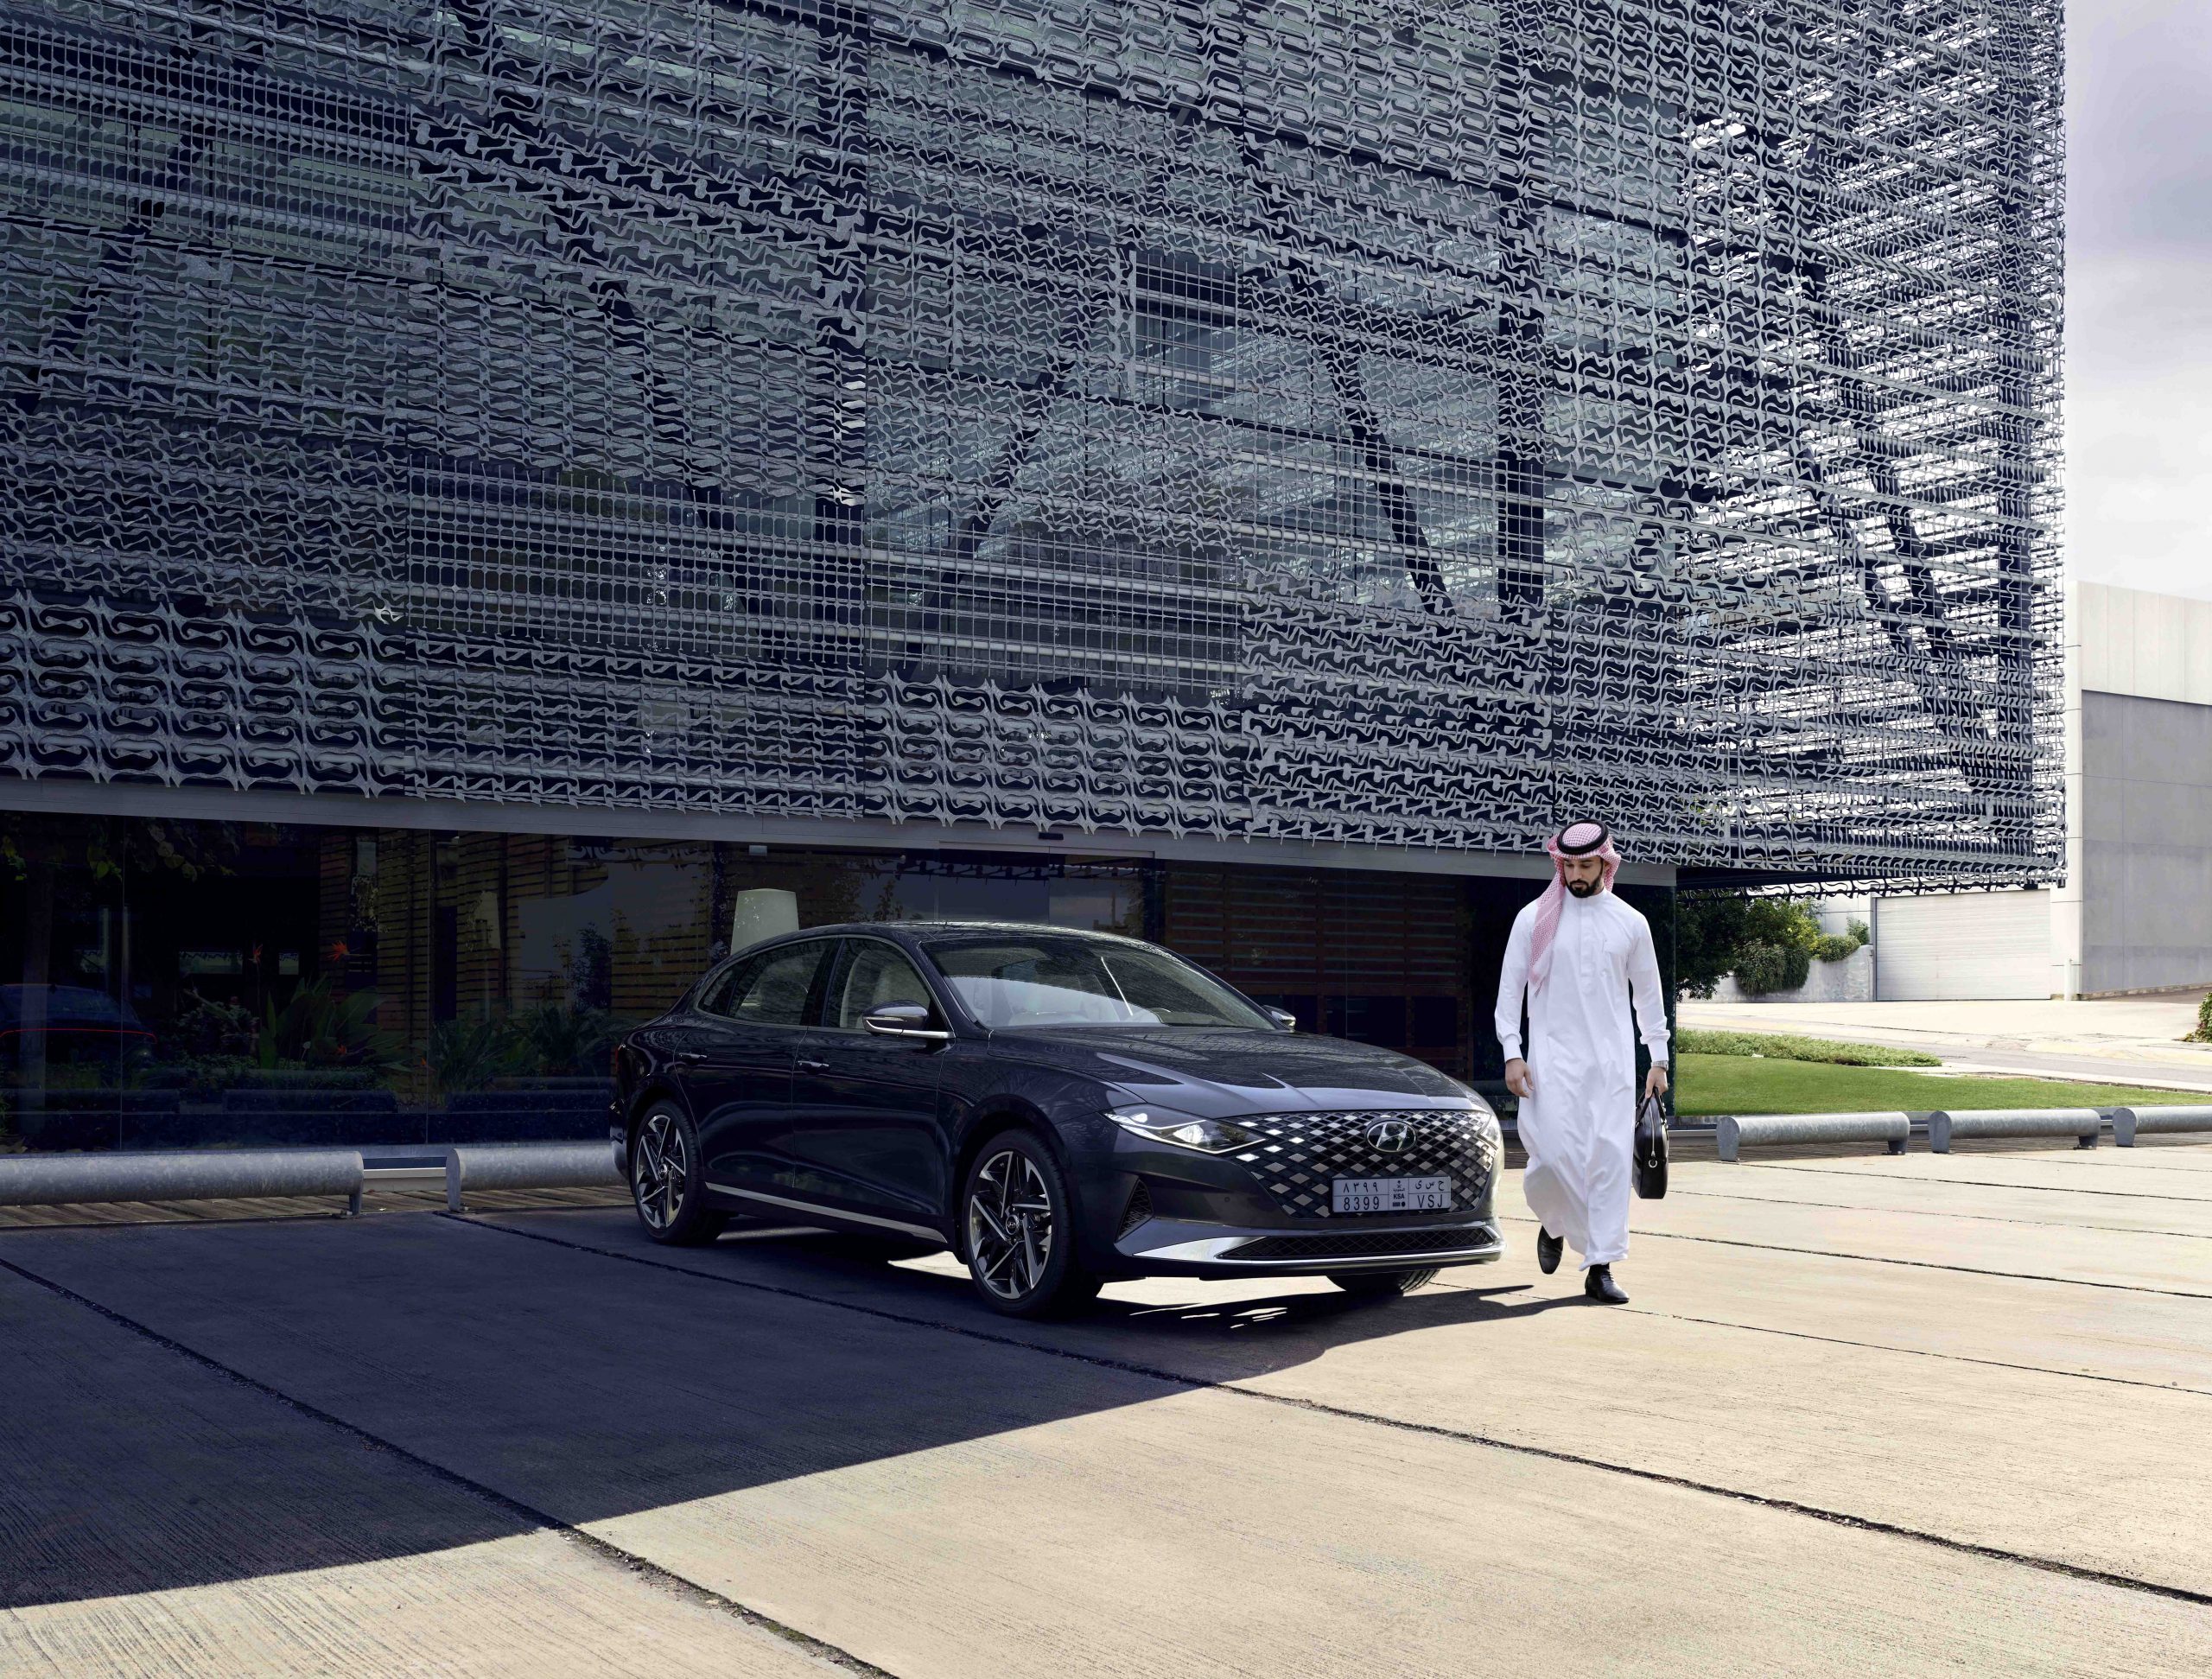 هيونداي تطلق الجيل الجديد من سيارة أزيرا في المملكة العربية السعودية